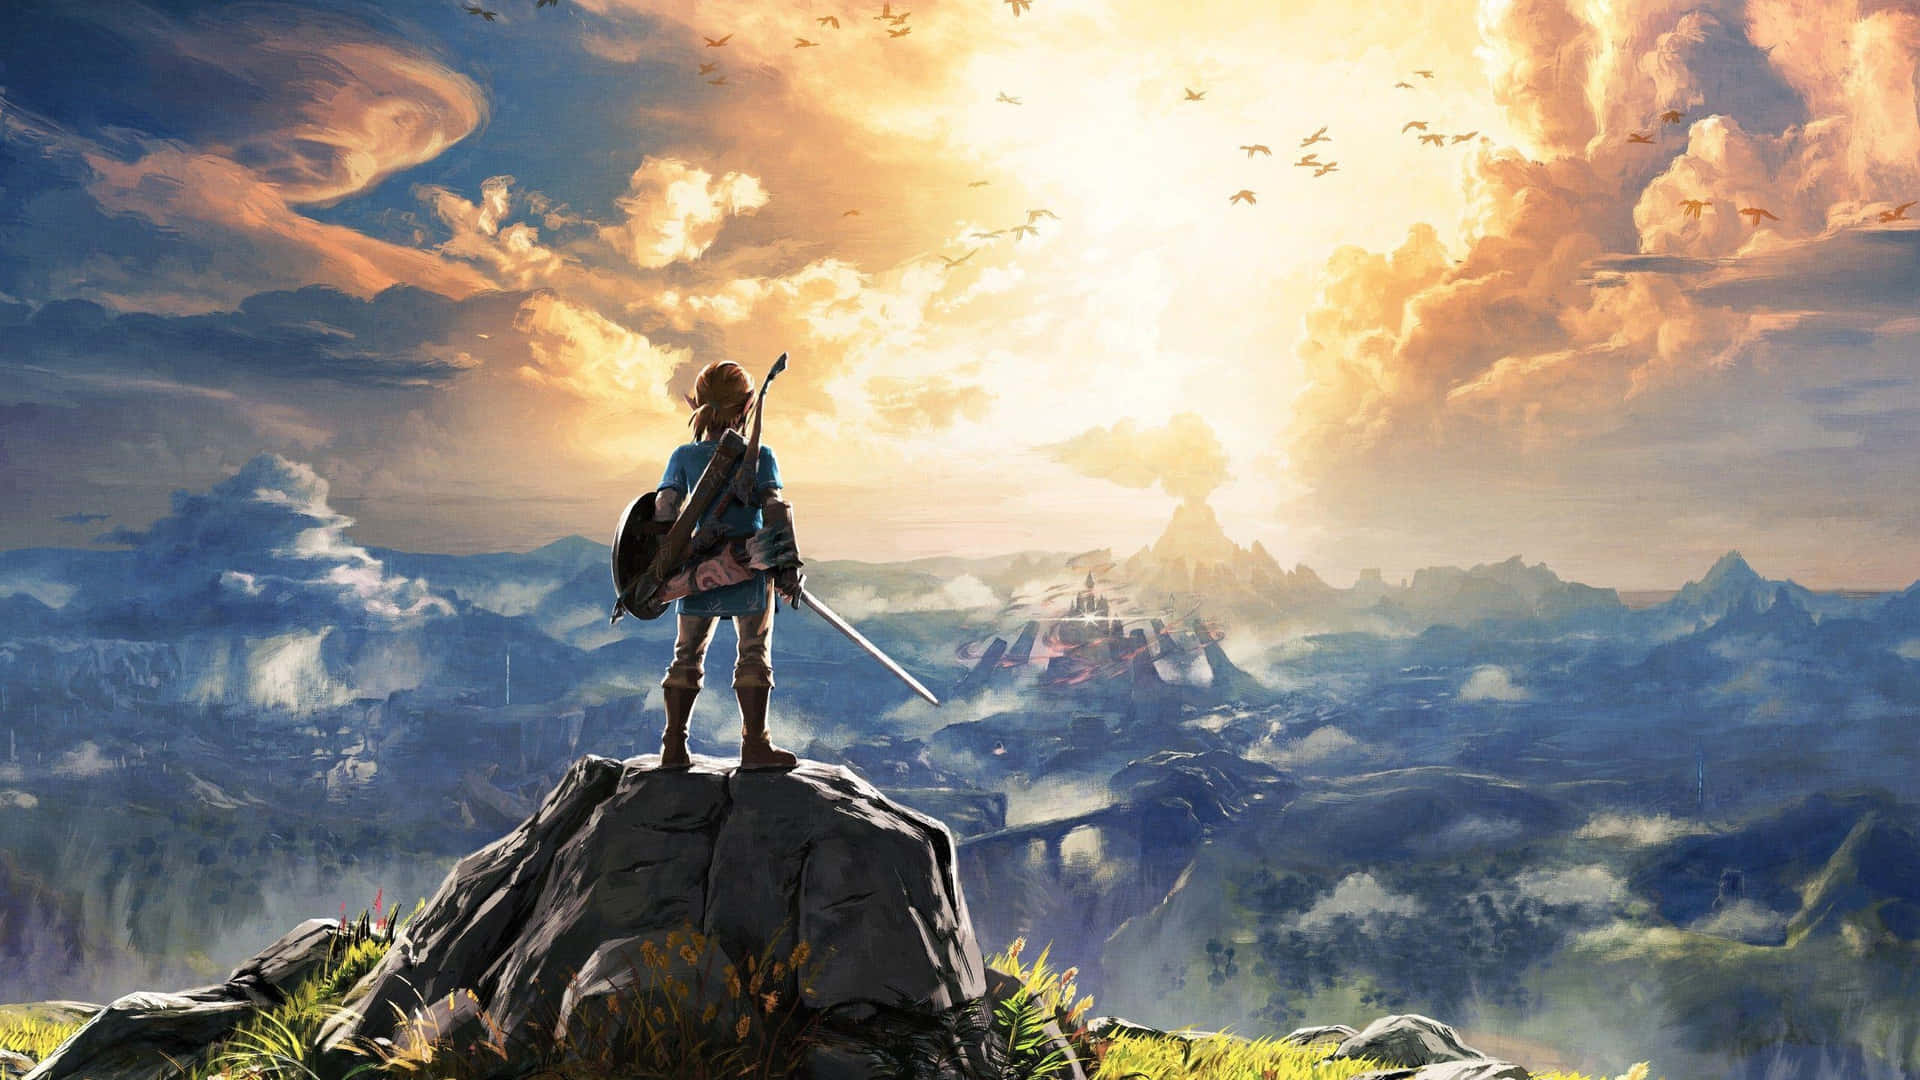 Følg Link I Fodspor Til Eventyr Og Ære I The Legend Of Zelda: Twilight Princess Hd. Wallpaper